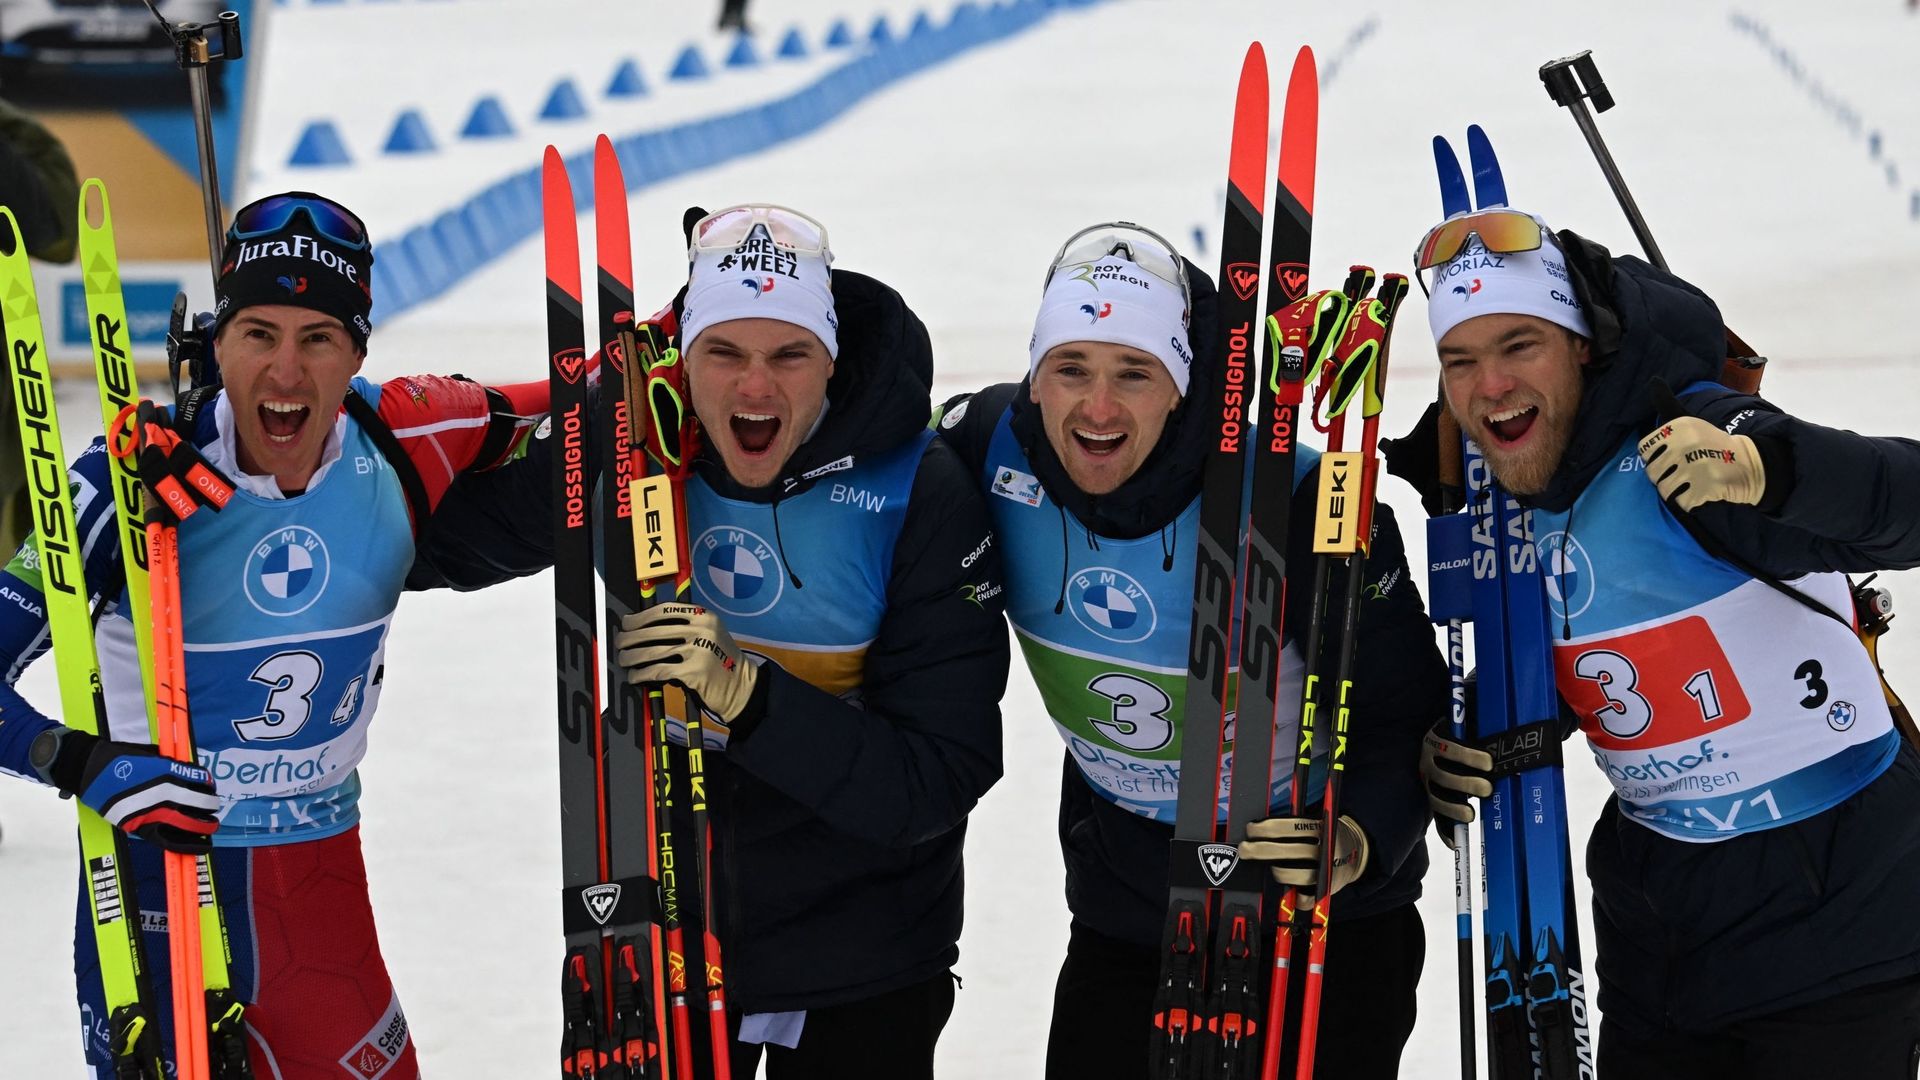 La France a remporté le relais masculin aux championnats du monde de biathlon.